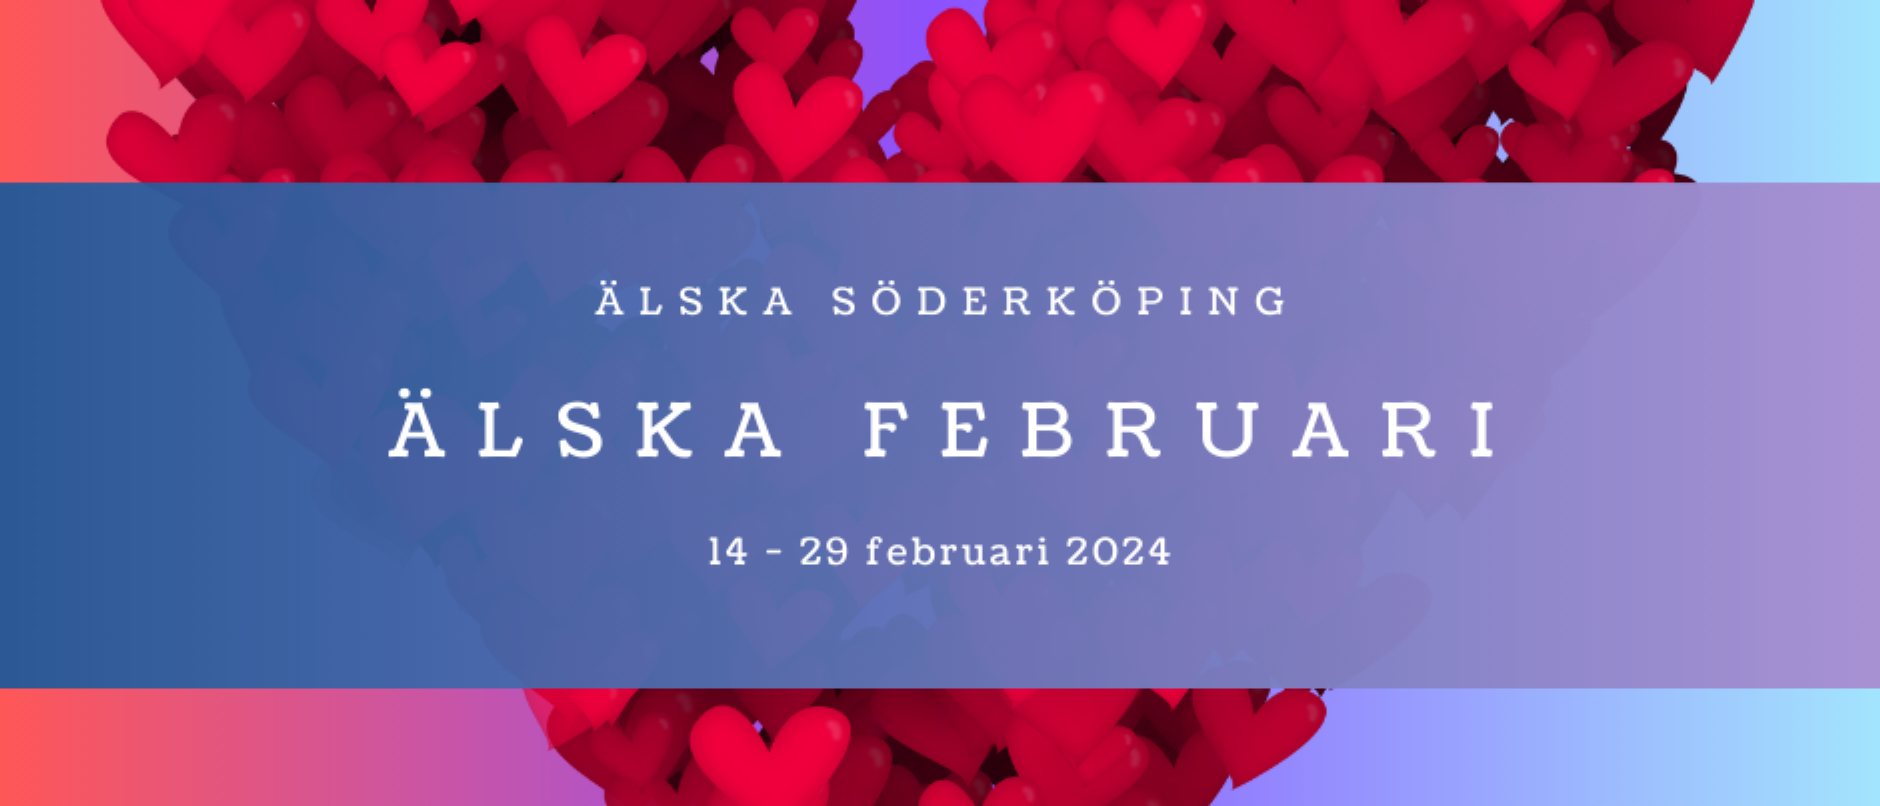 Illustrerad bild: Rött hjärta mot blåröd bakgrund med text Älska Söderköping, Älska Februari 14-29 februari 2024